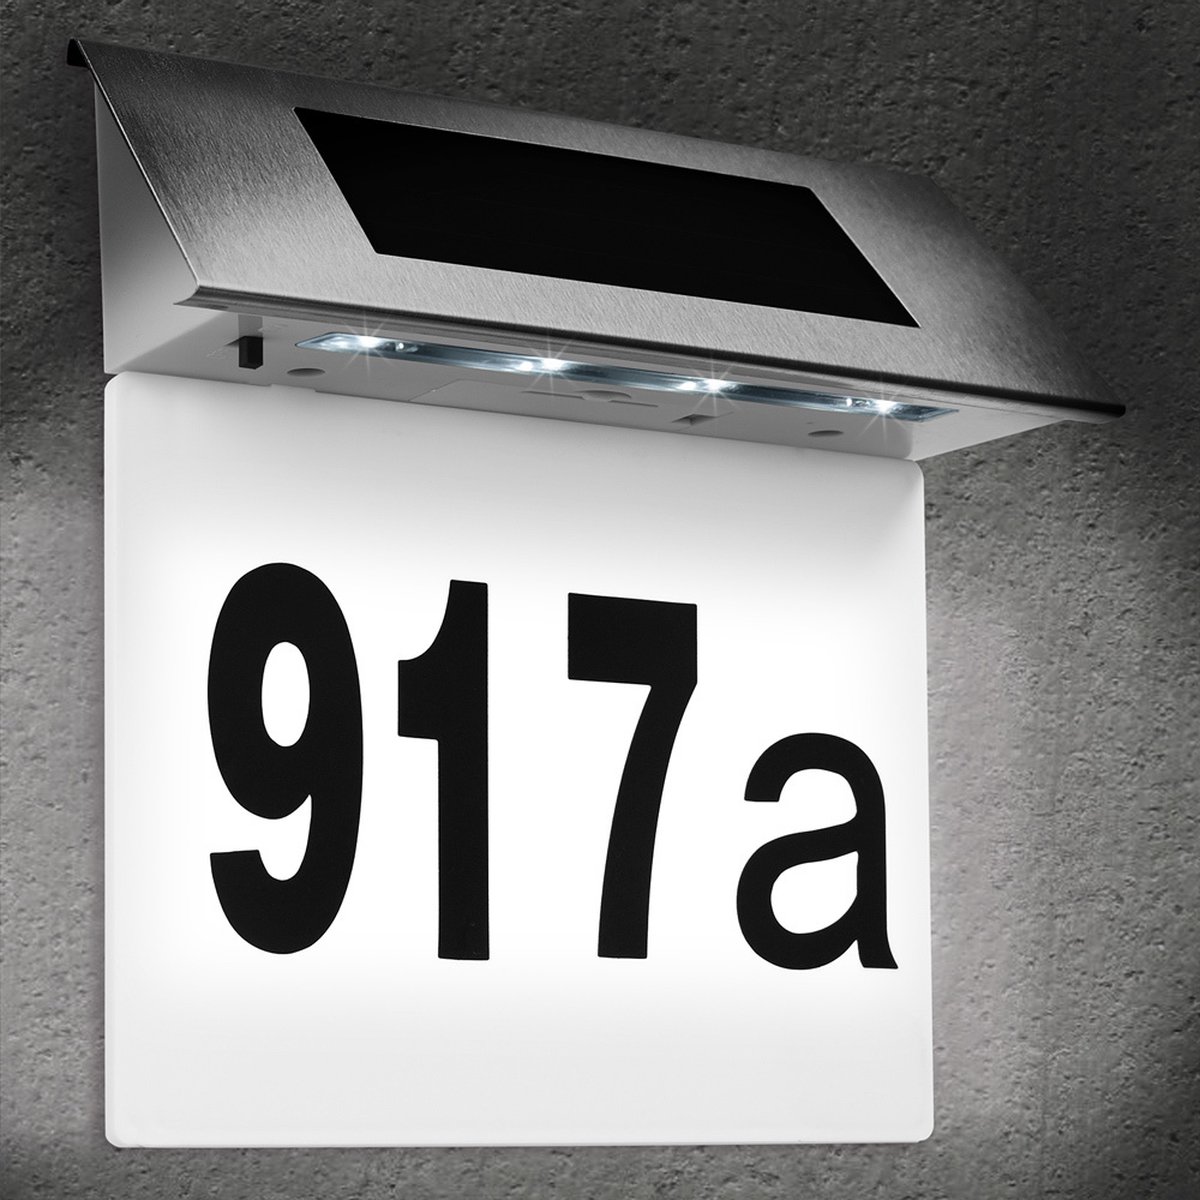 Numéro de maison solaire LED, IP44 Numéro de porte solaire d